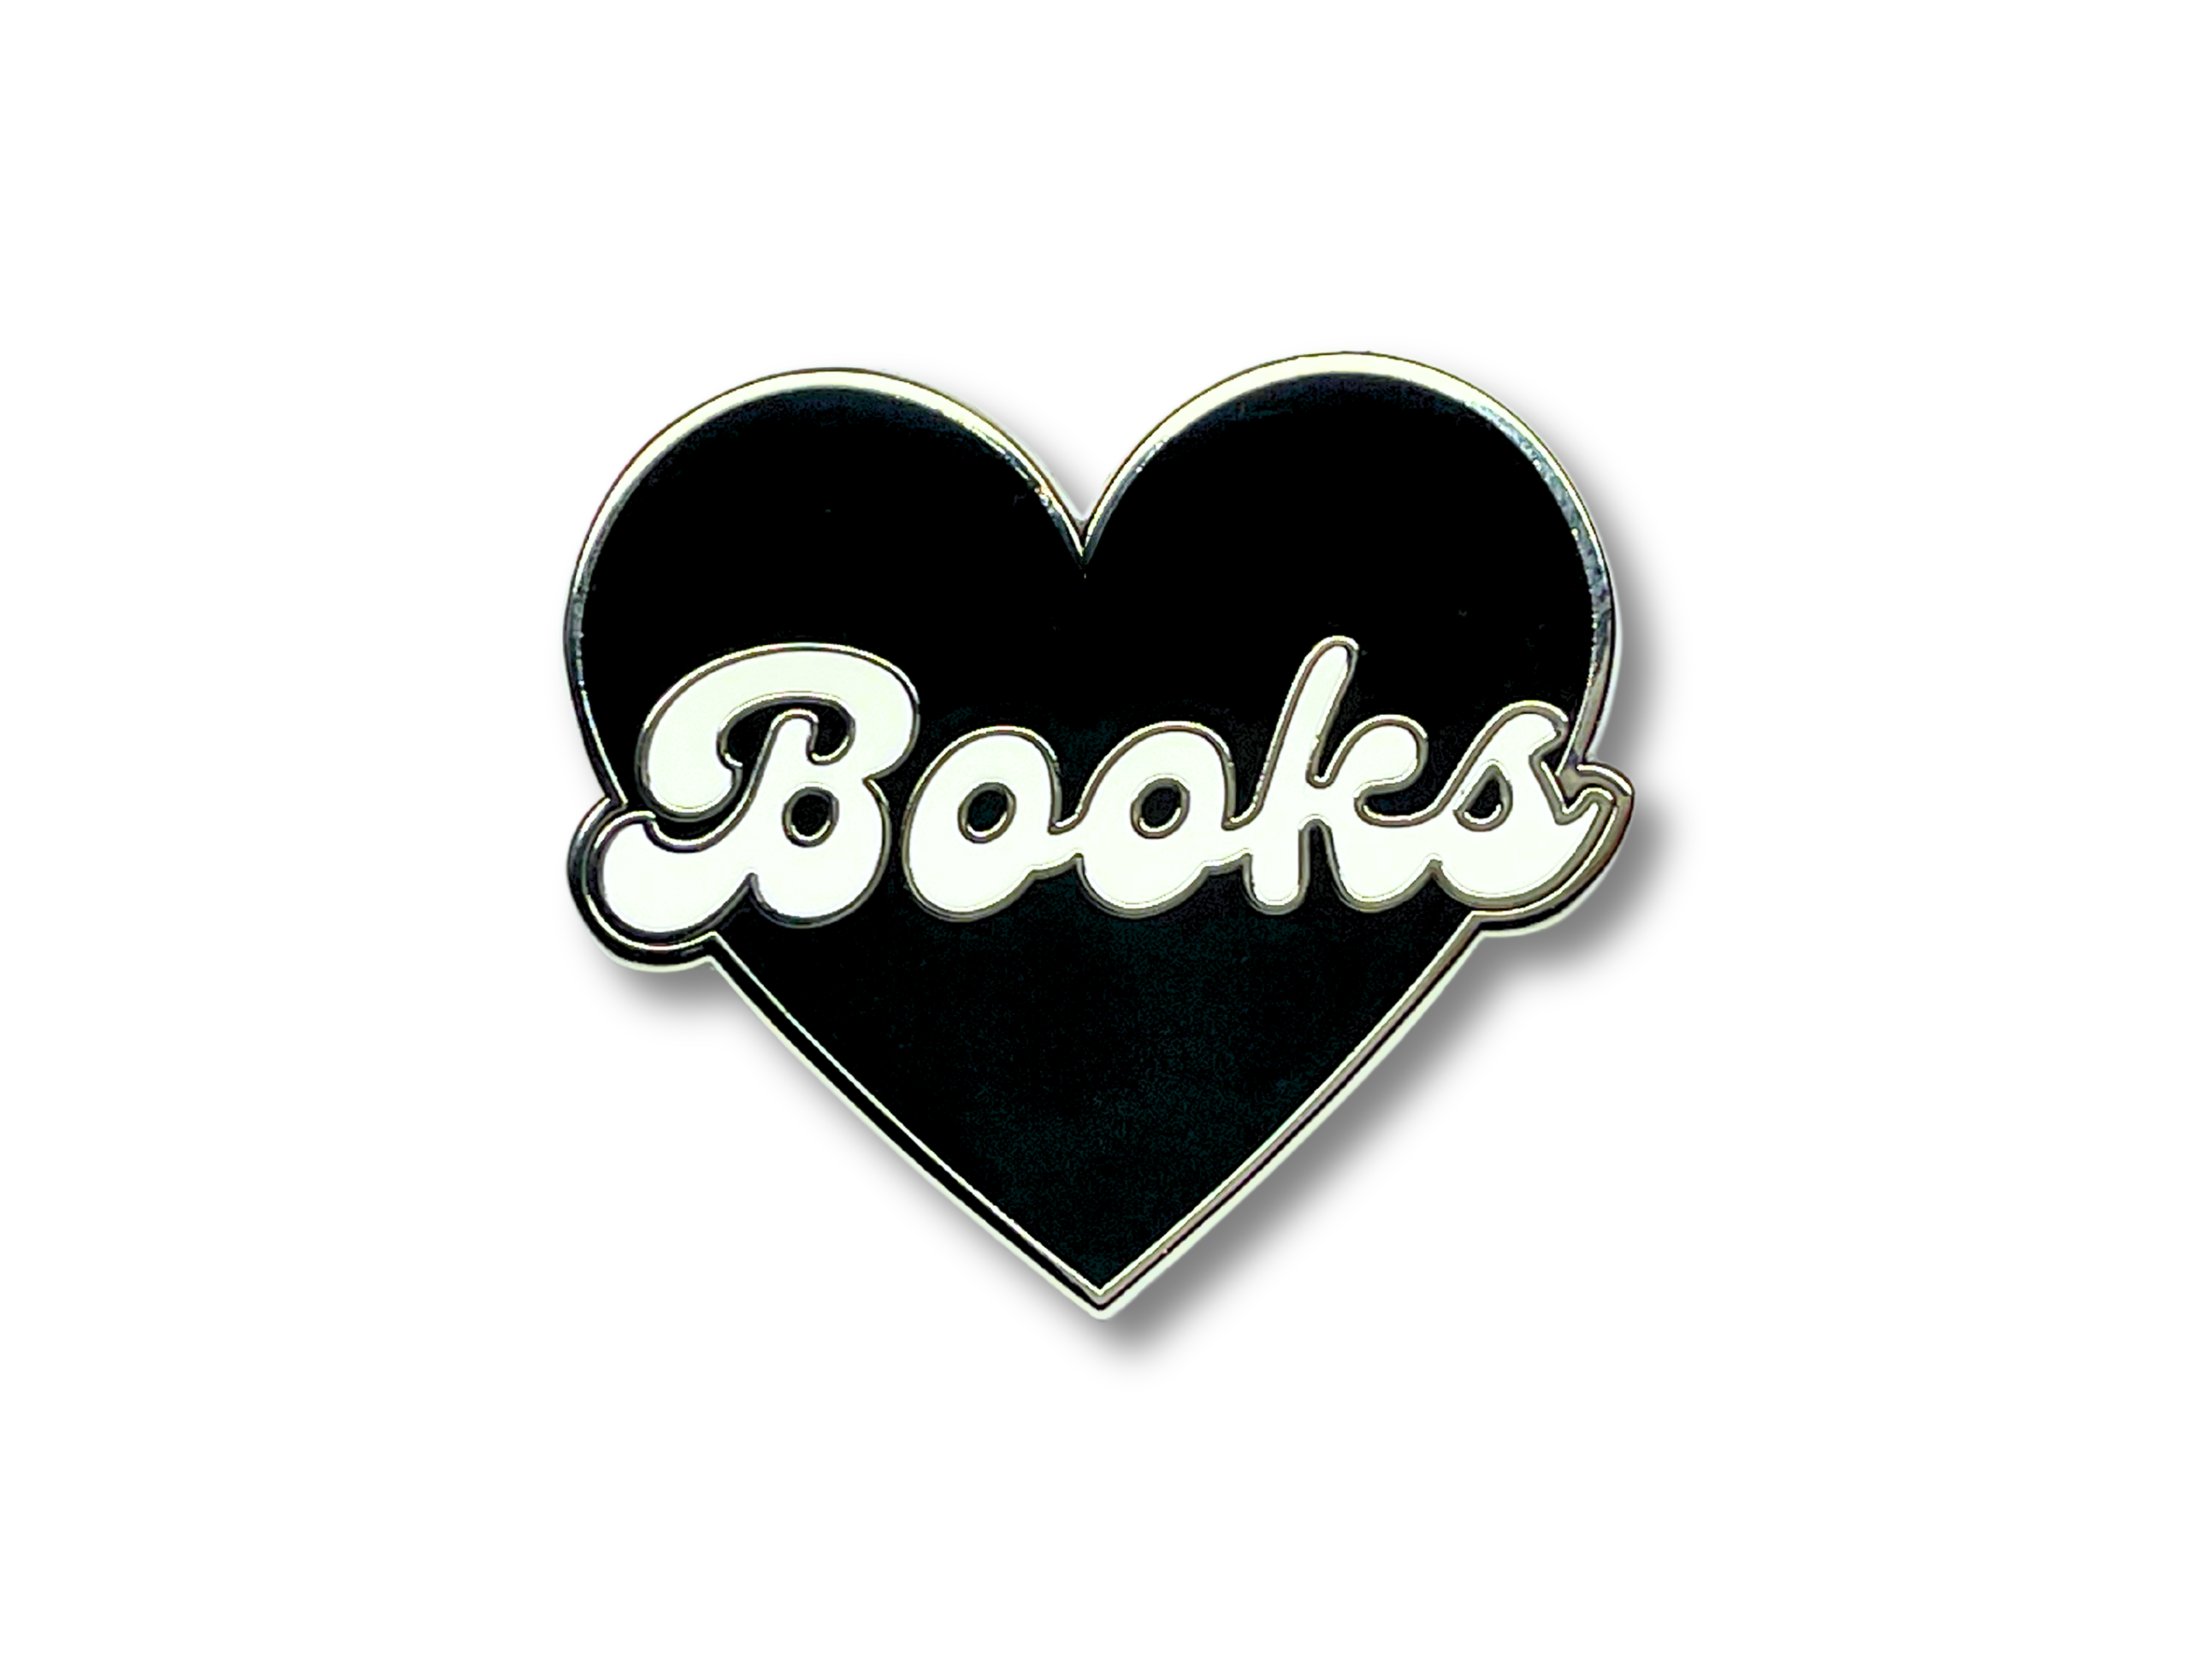 Books Bookish enamel pin, lapel pin, Front view, black silver